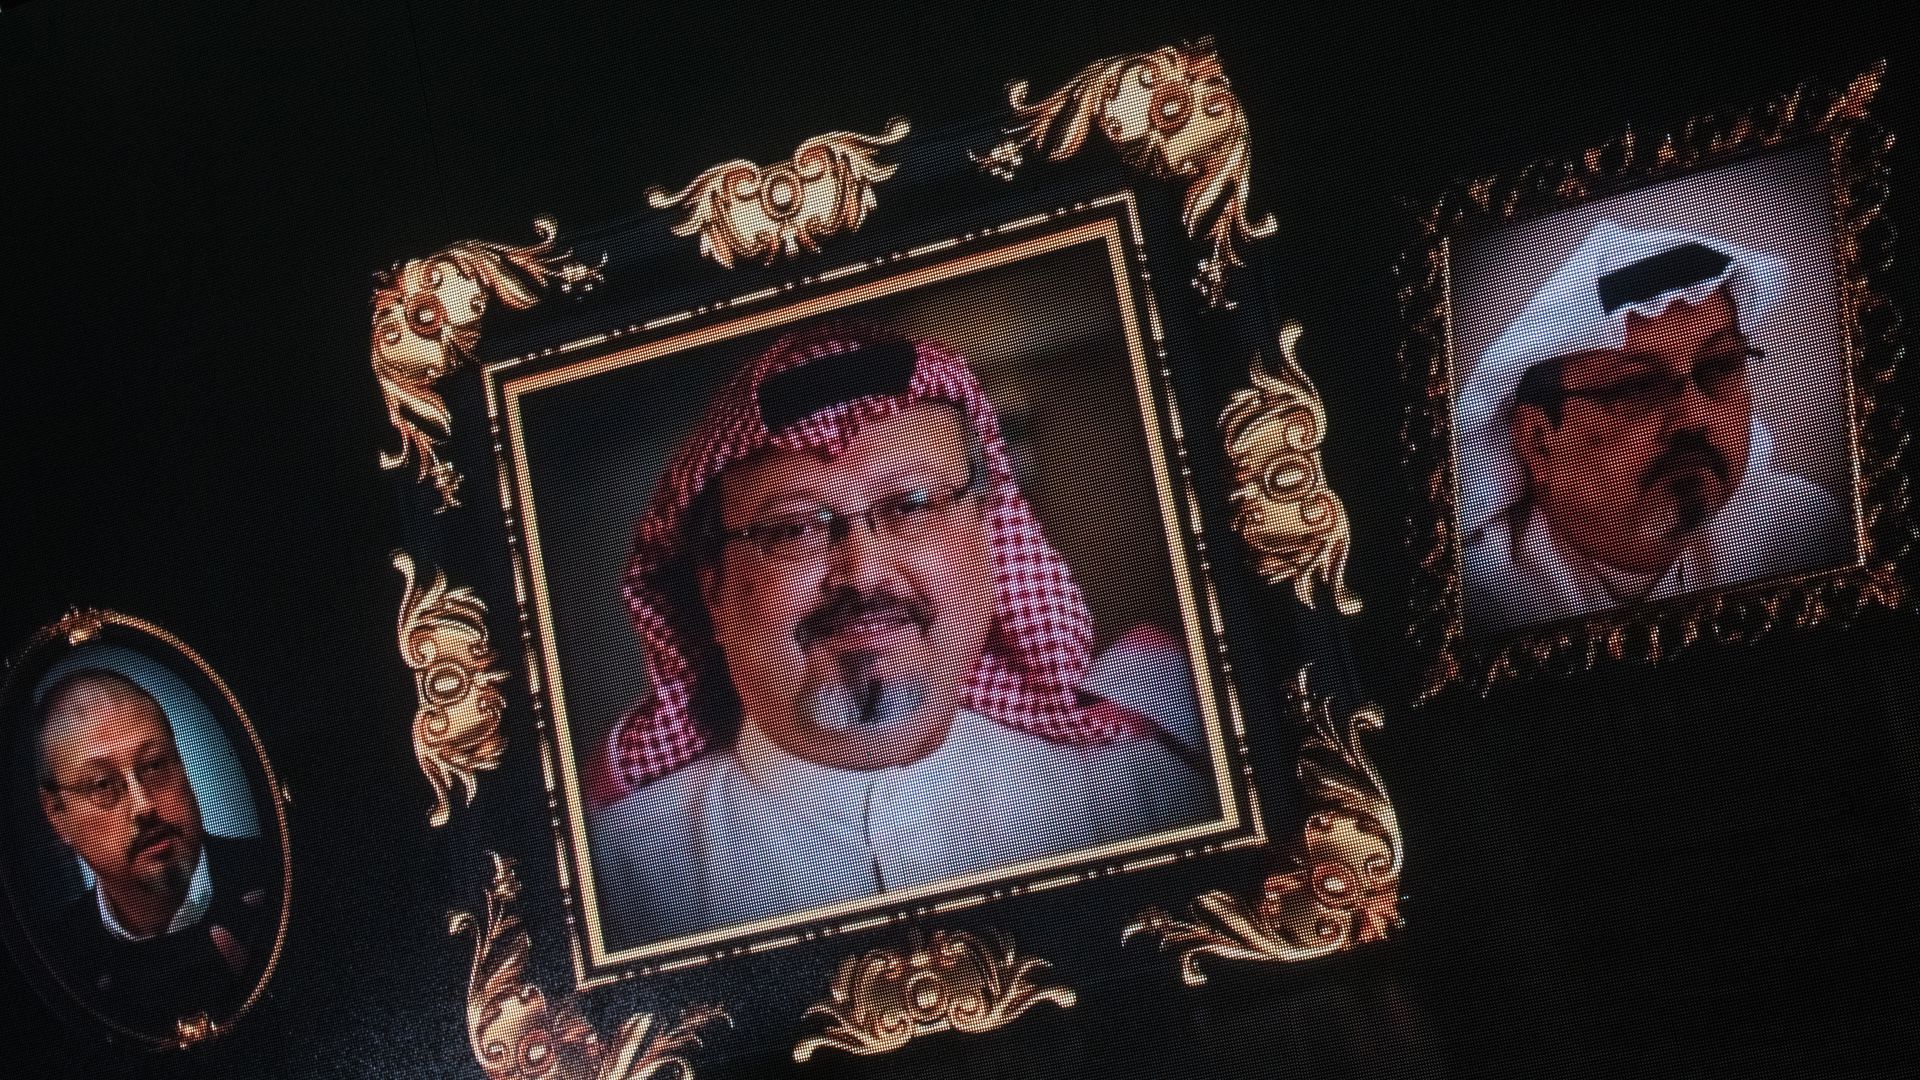 Images of Jamal Khashoggi